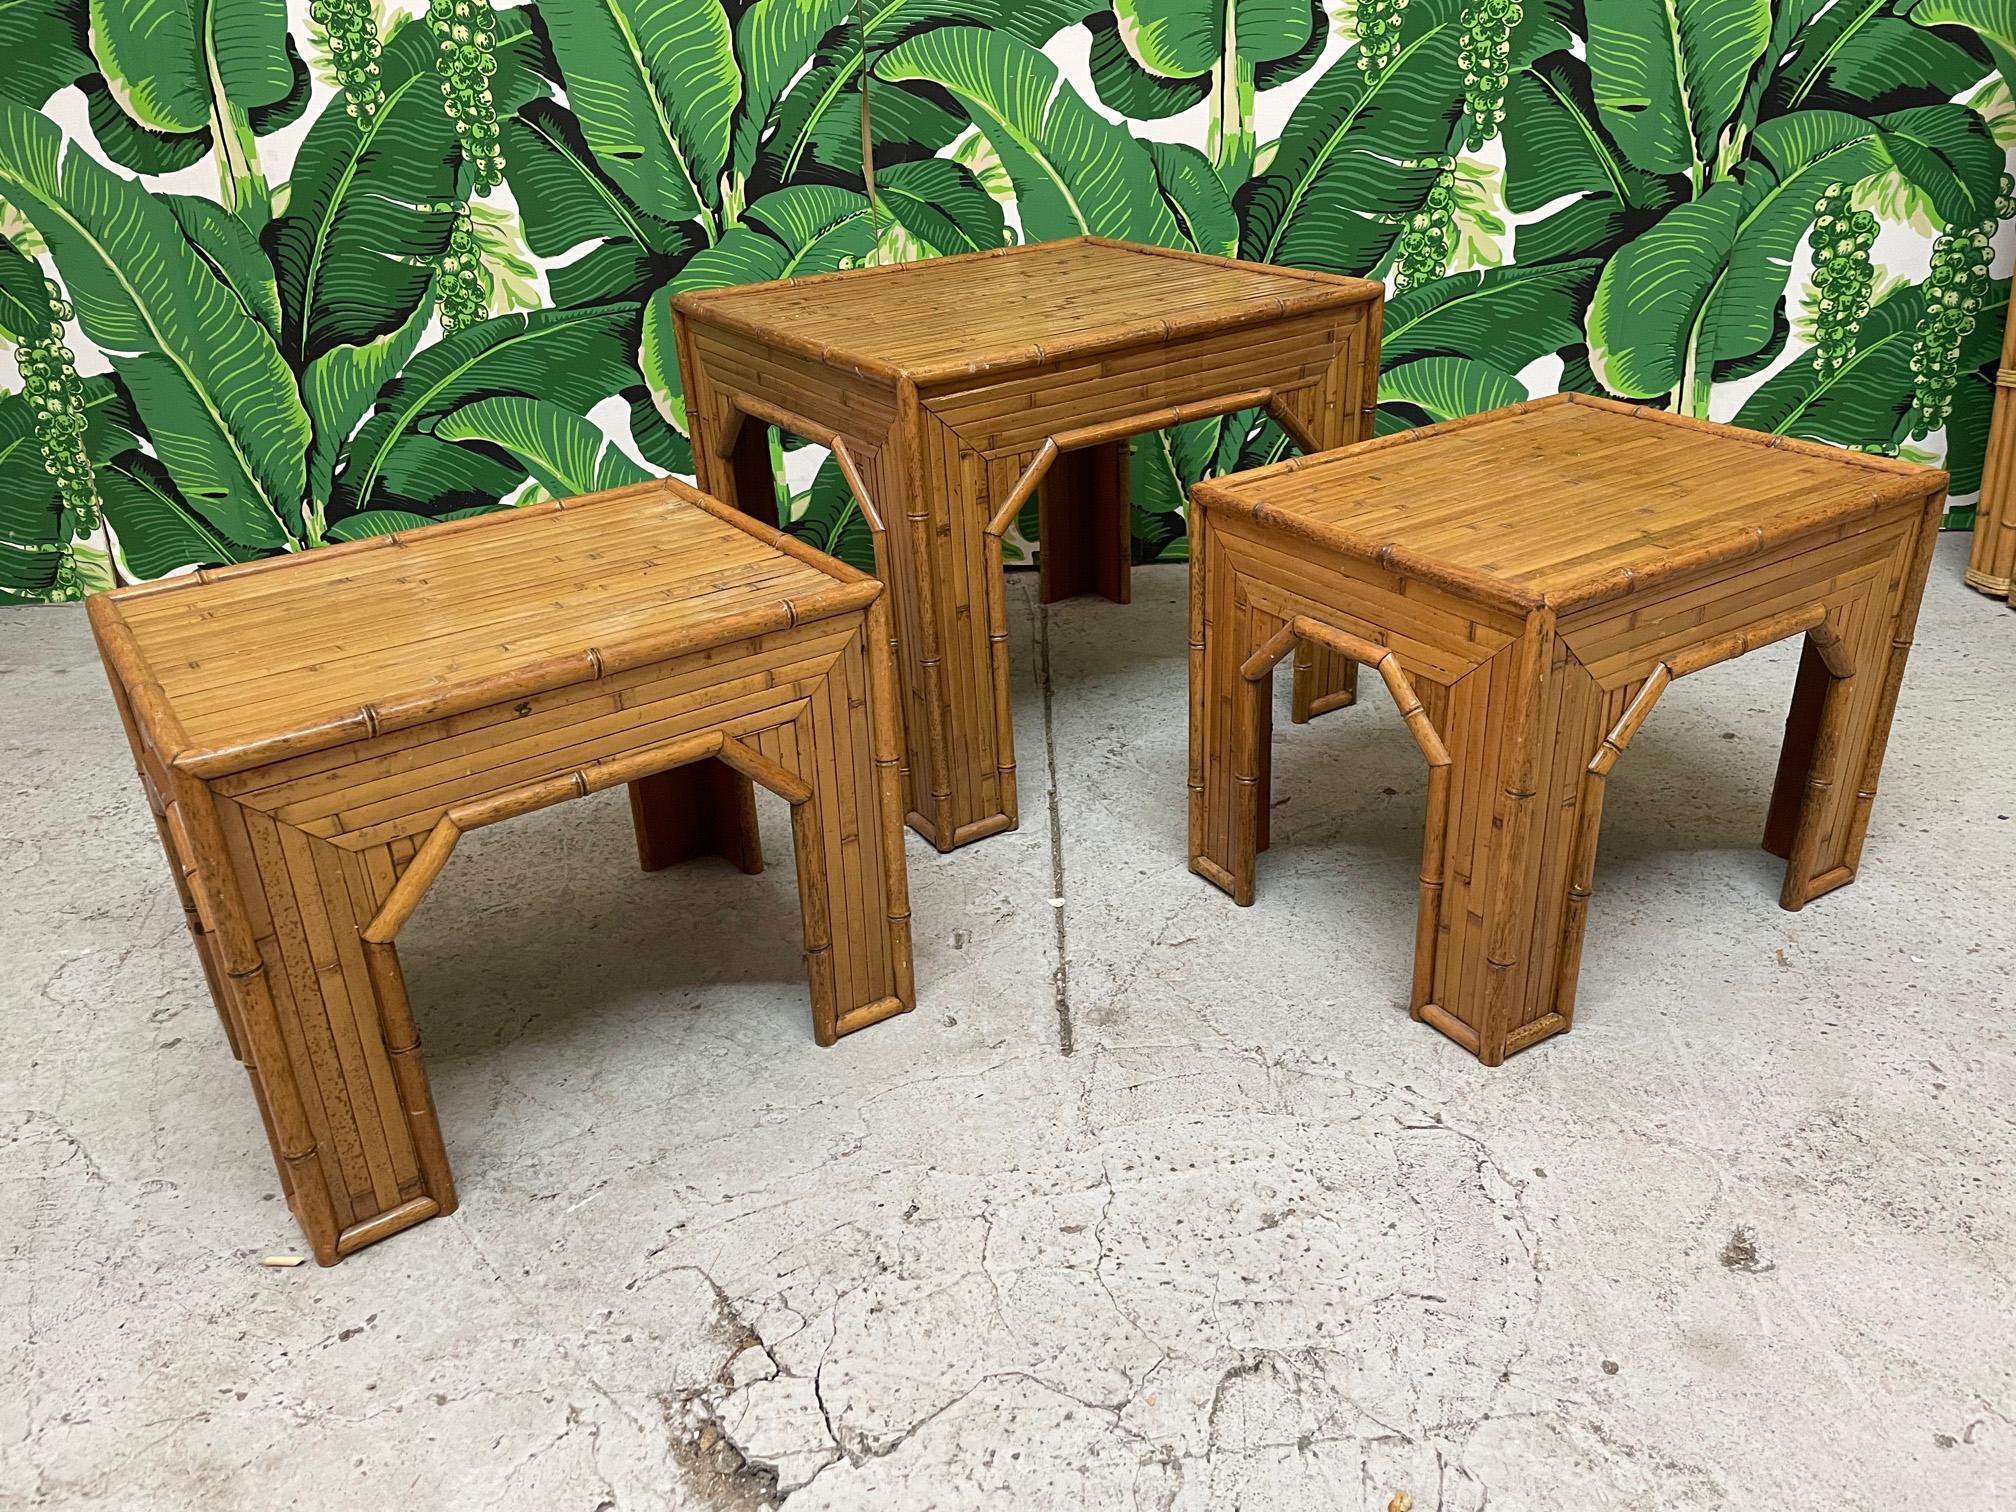 Das Set aus 3 Beistelltischen im Vintage-Stil ist mit gespaltenem Rattanfurnier und Bambusimitat ausgestattet. Zwei kleinere Tische mit den Maßen 20